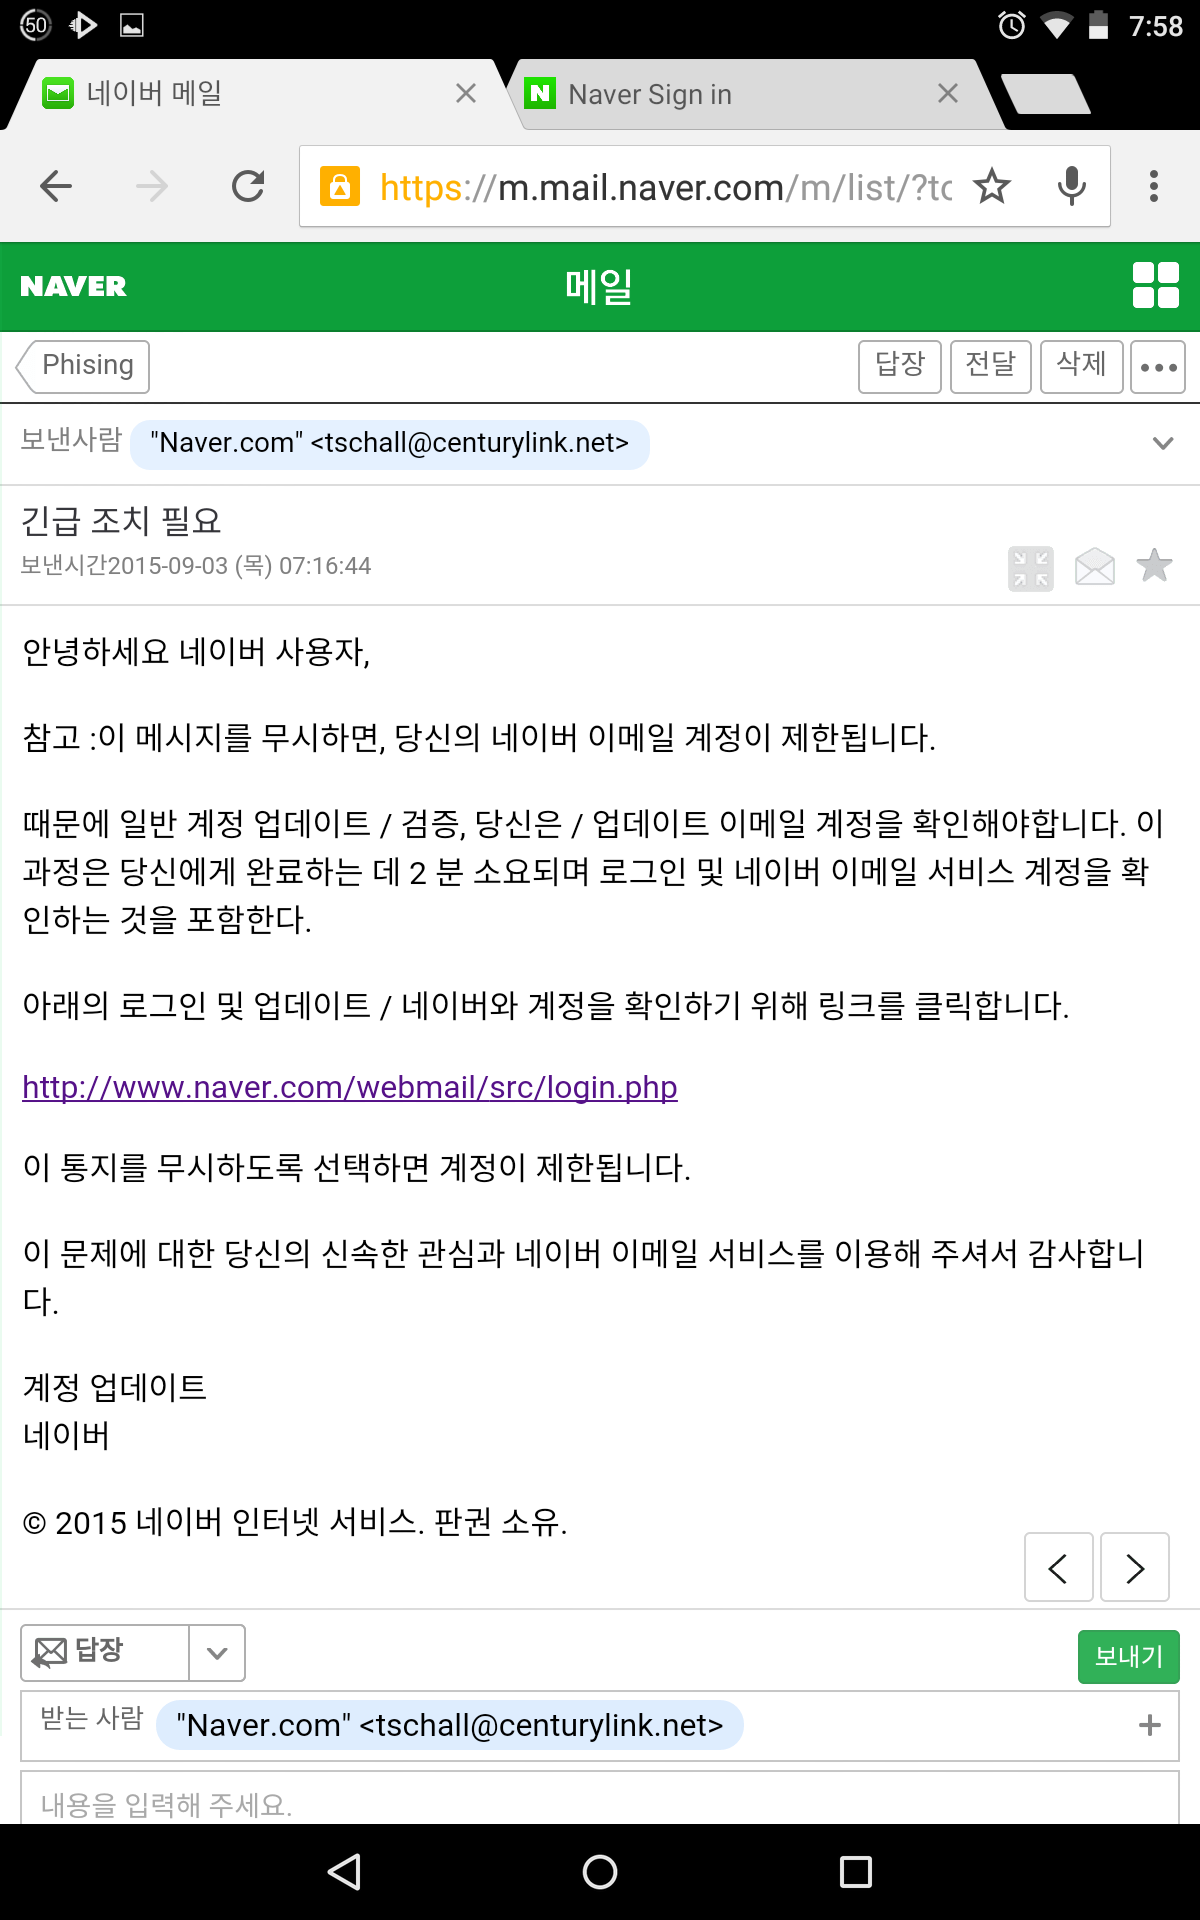 Screenshot_2015-09-03-07-58-46.png 네이버를 사칭한 피싱(phishing) 이메일